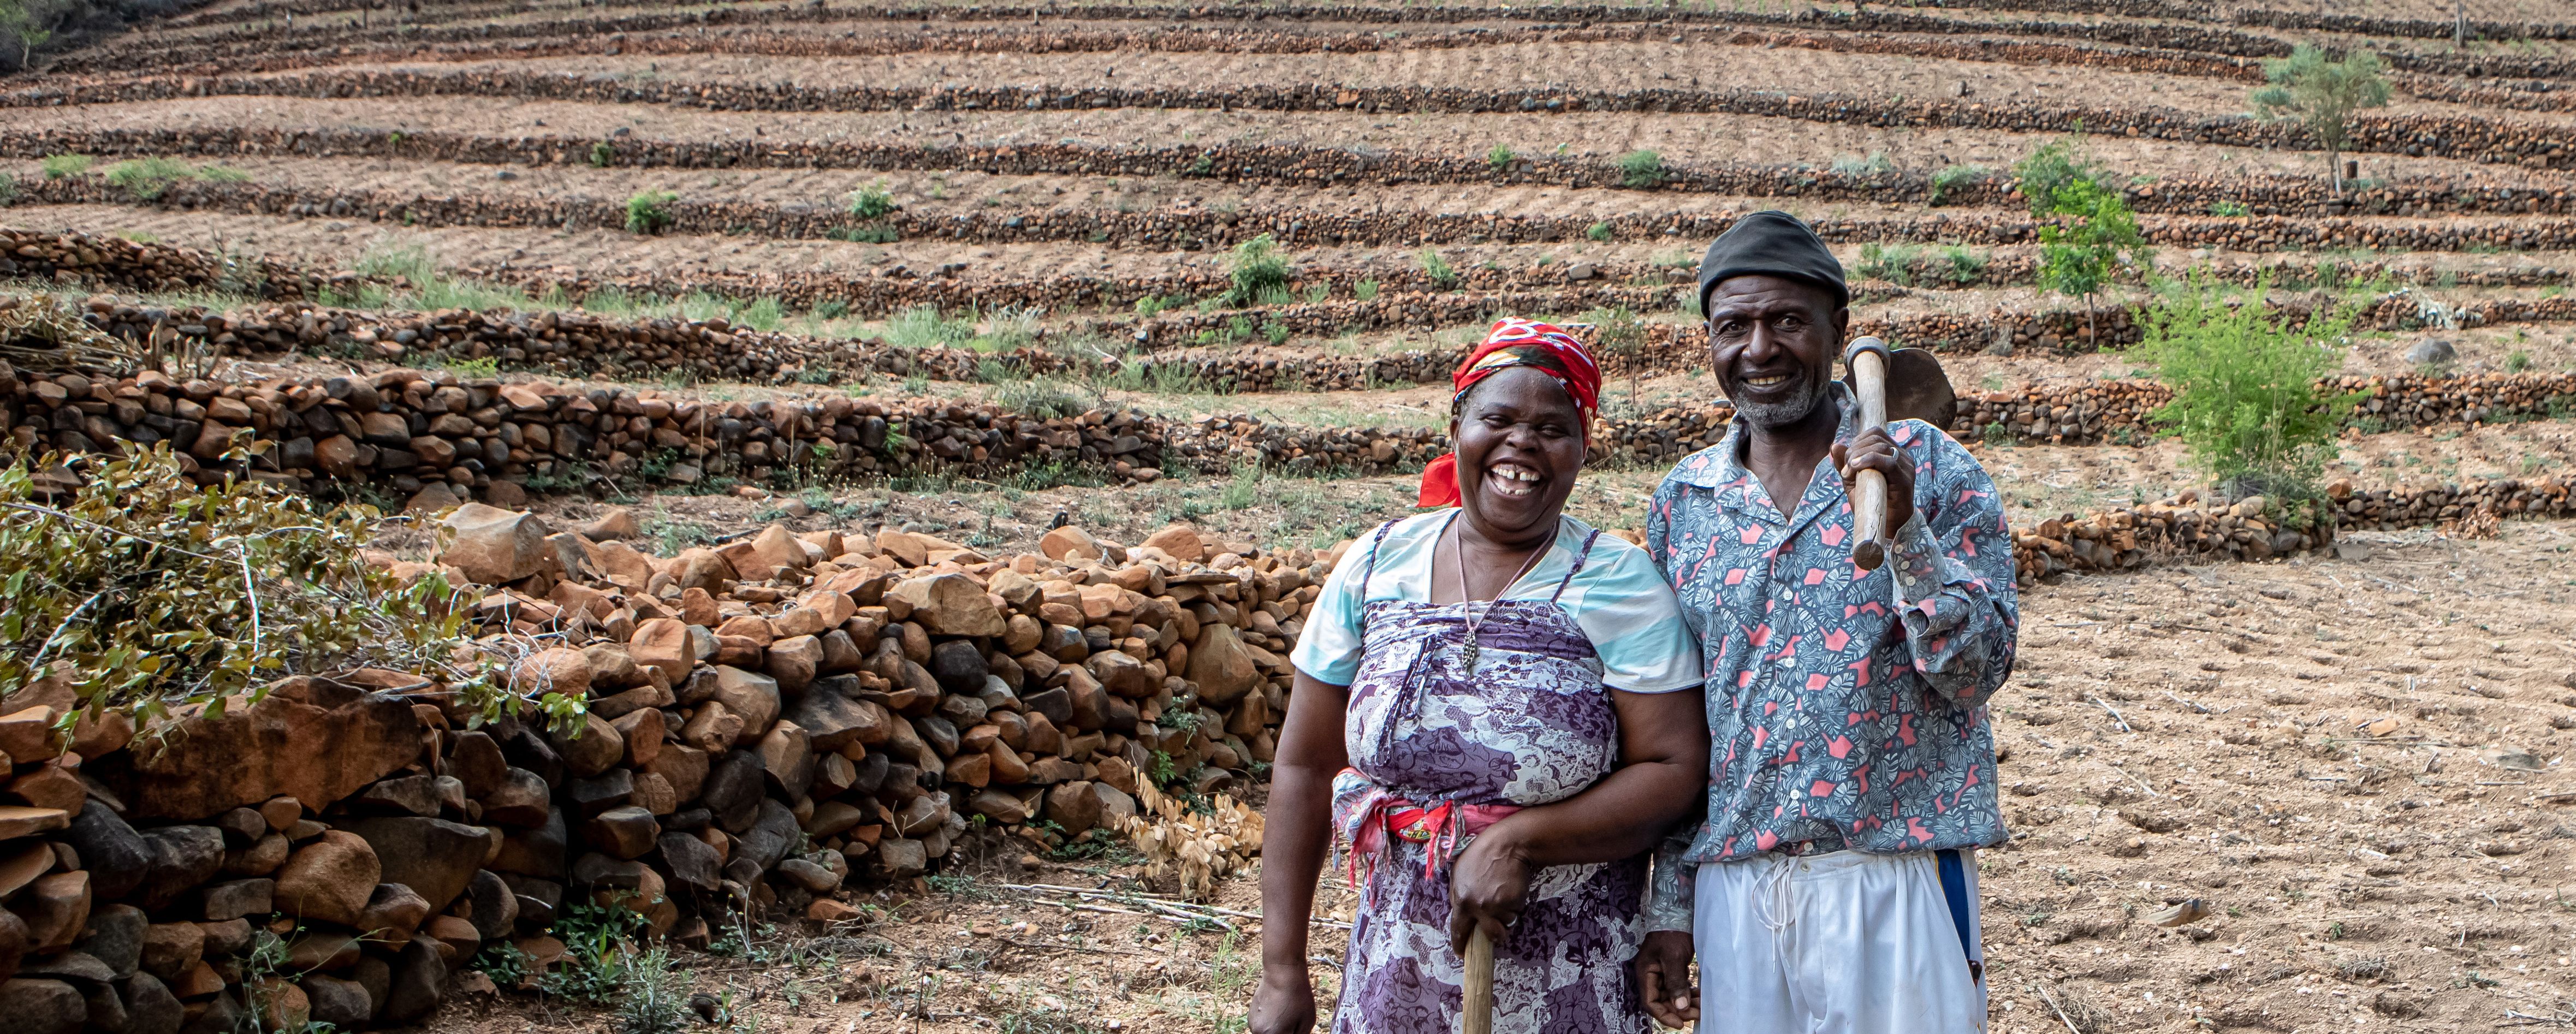 Gift Dirani (65) und seine Frau Evelyn (61) leben mit 5 ihrer 11 Kinder und 3 Enkelkindern auf ihrem Hof in Nyanyadzi, Chimanimani an der Ostgrenze Simbabwes. Die Region hat eine schwere Dürre erlebt und ist vom Klimawandel stark betroffen. Dadurch sind die Kleinbauern von großen Verlusten bei der Ernte und dem Viehbestand bedroht.Projektpartner: Towards Sustainable Use of Resources Organisation (TSURO)